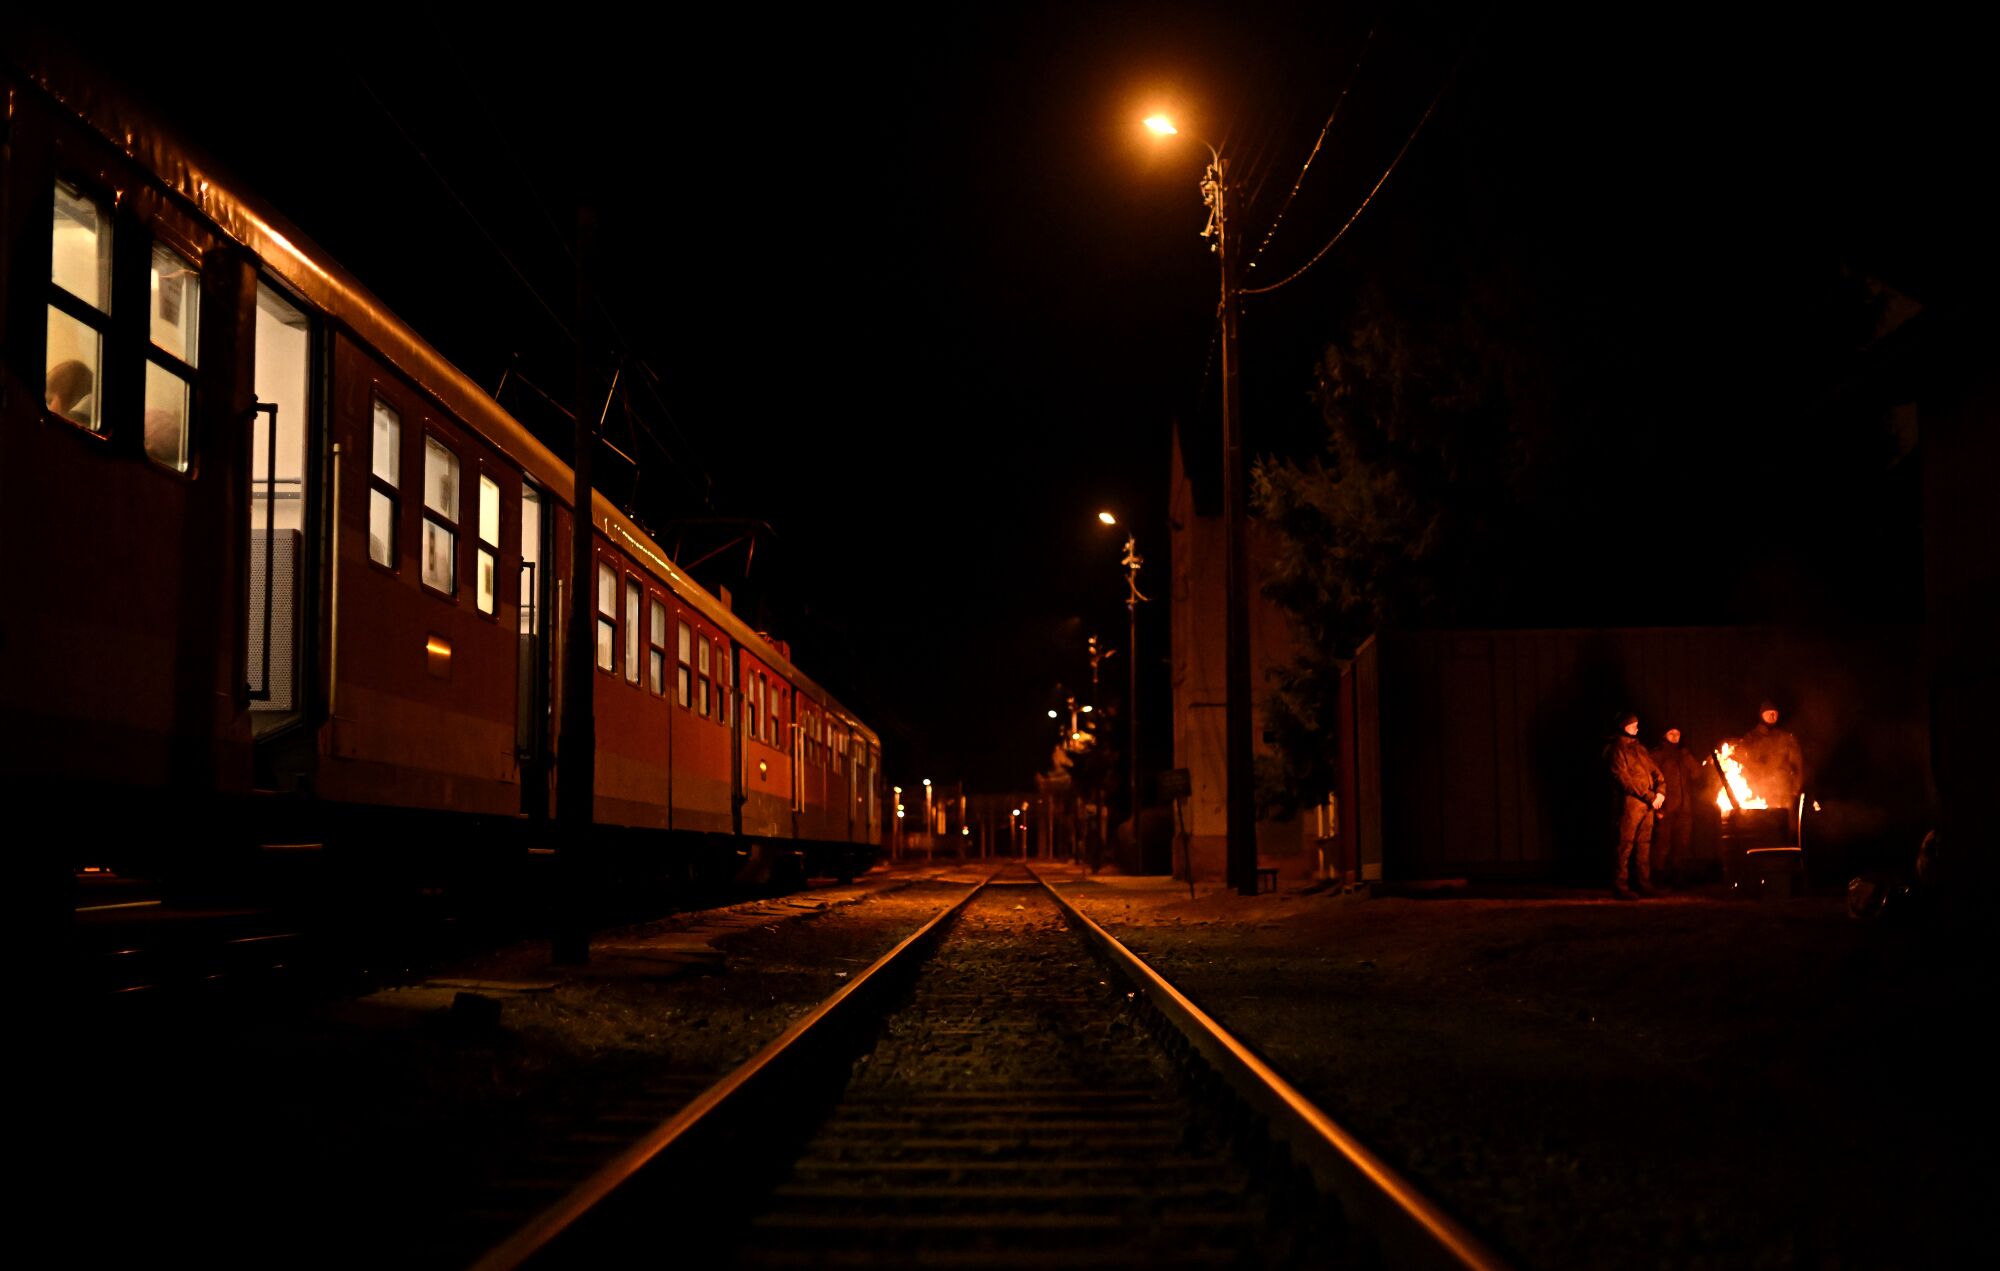 A train at night.